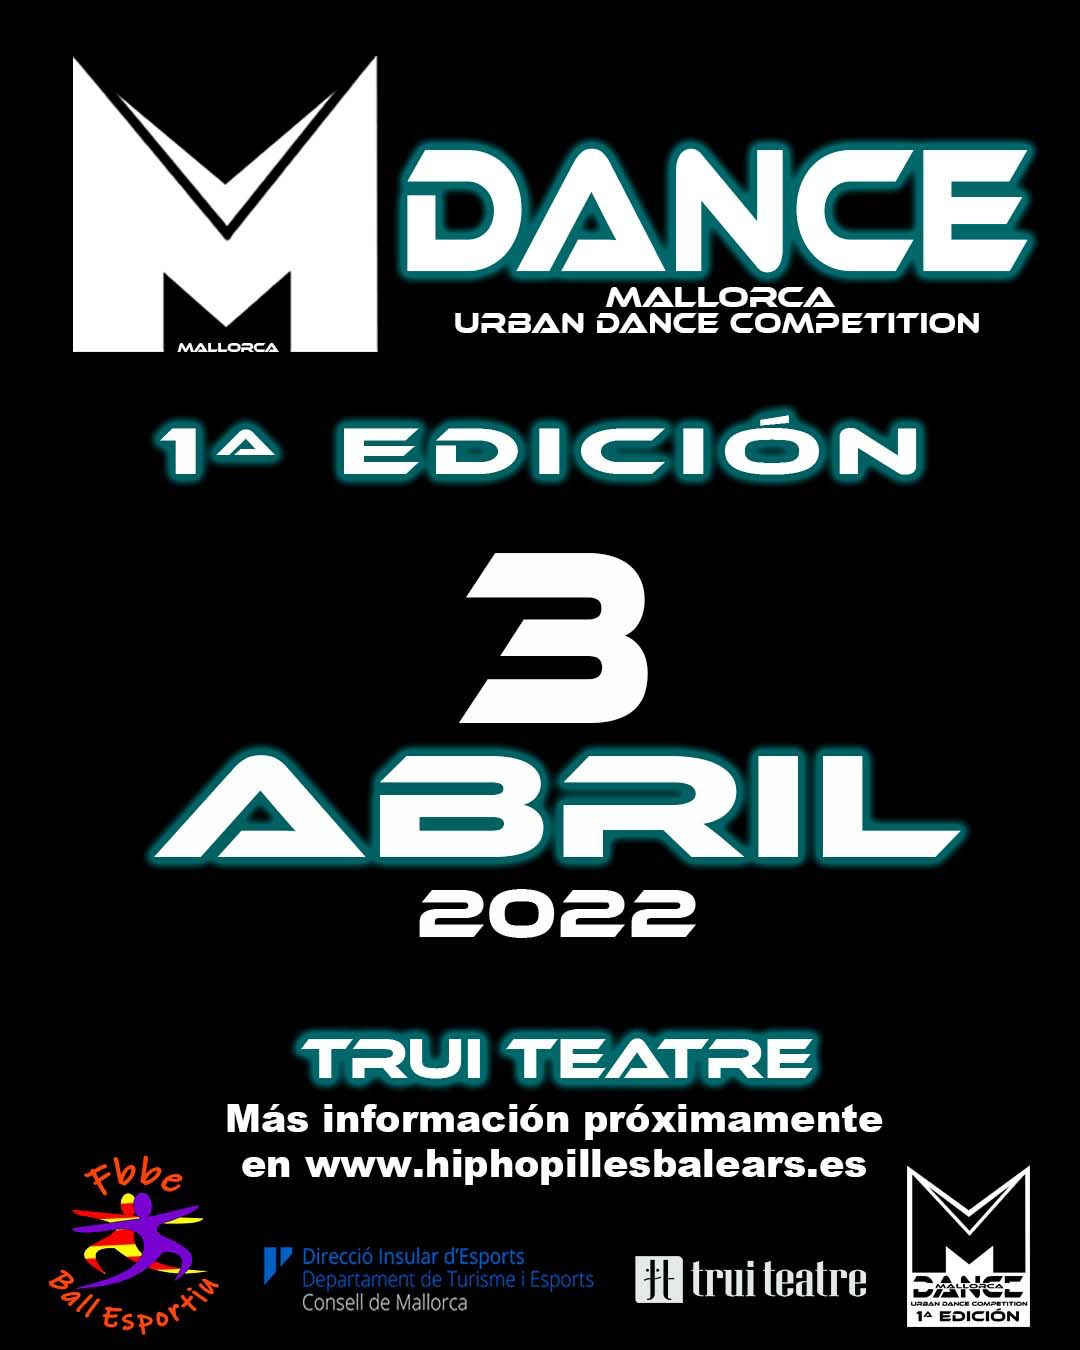 Mallorca Urban Dance Competition 2022